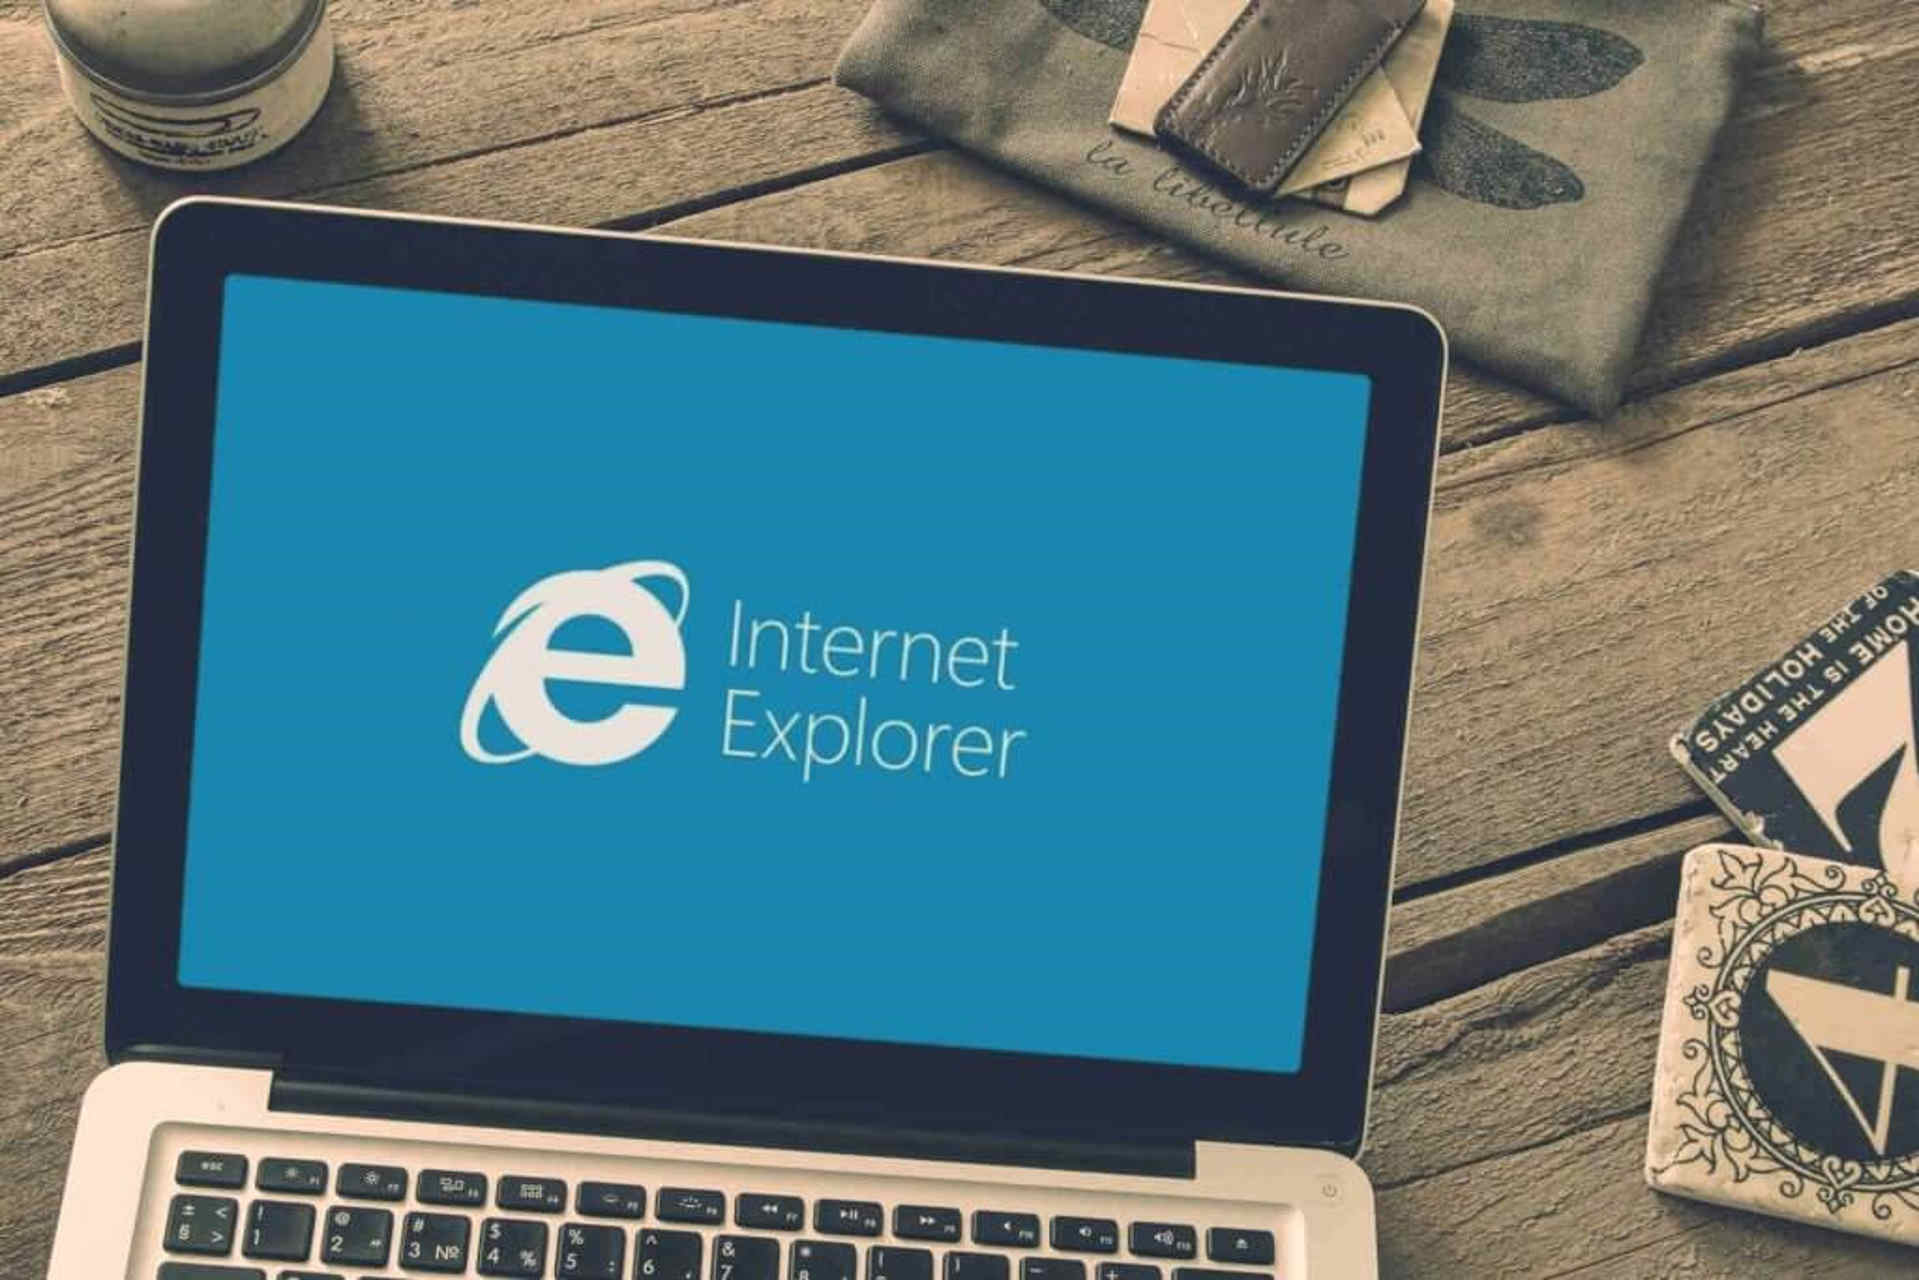 Internet Explorer 11 res aaResources.dll 104 error troubleshooting